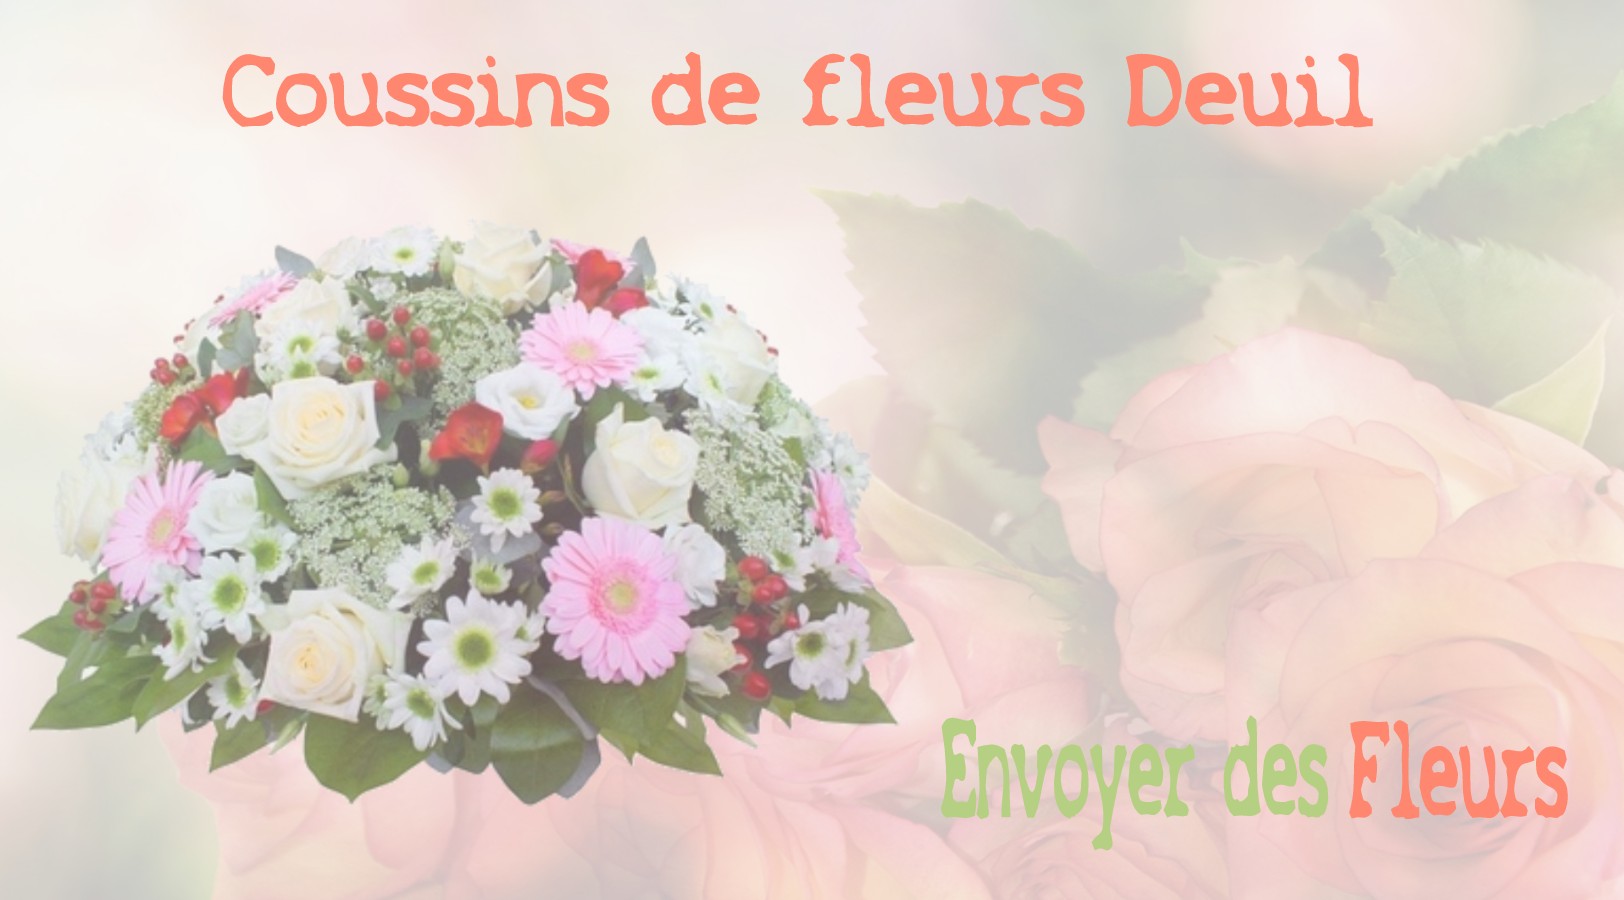 Les coussins de fleurs deuil - LIVRAISON FLEURS DEUIL A VINCY-MANOEUVRE 77